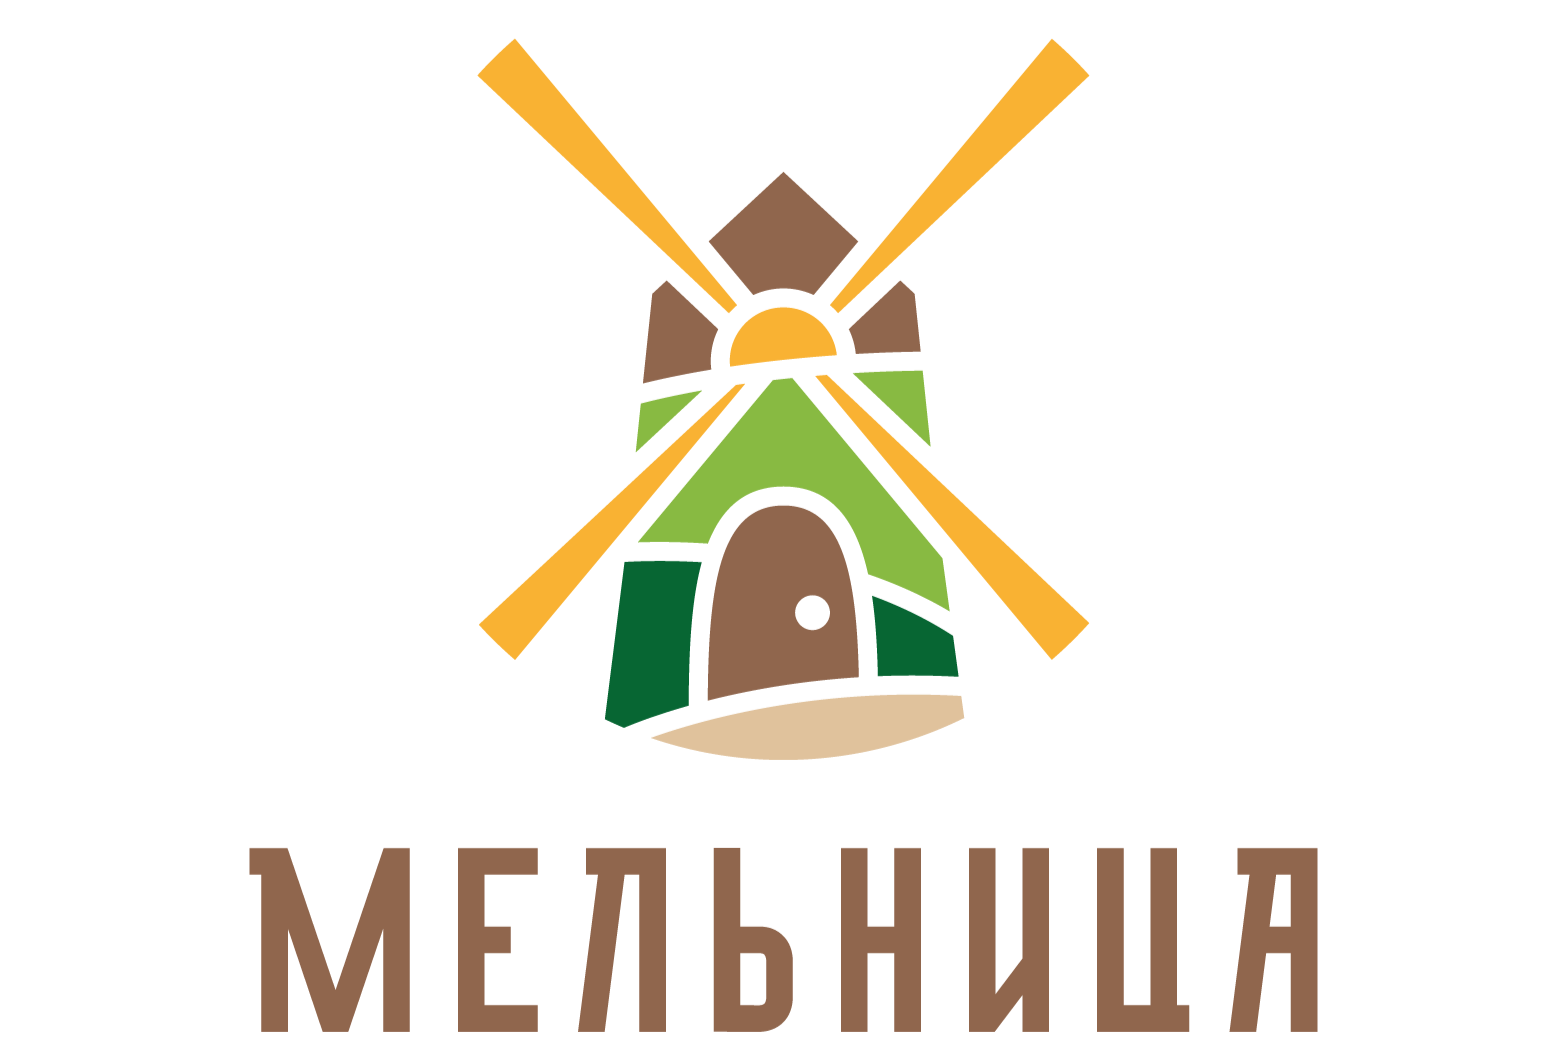 Мельница Магазин Здорового Питания Екатеринбург